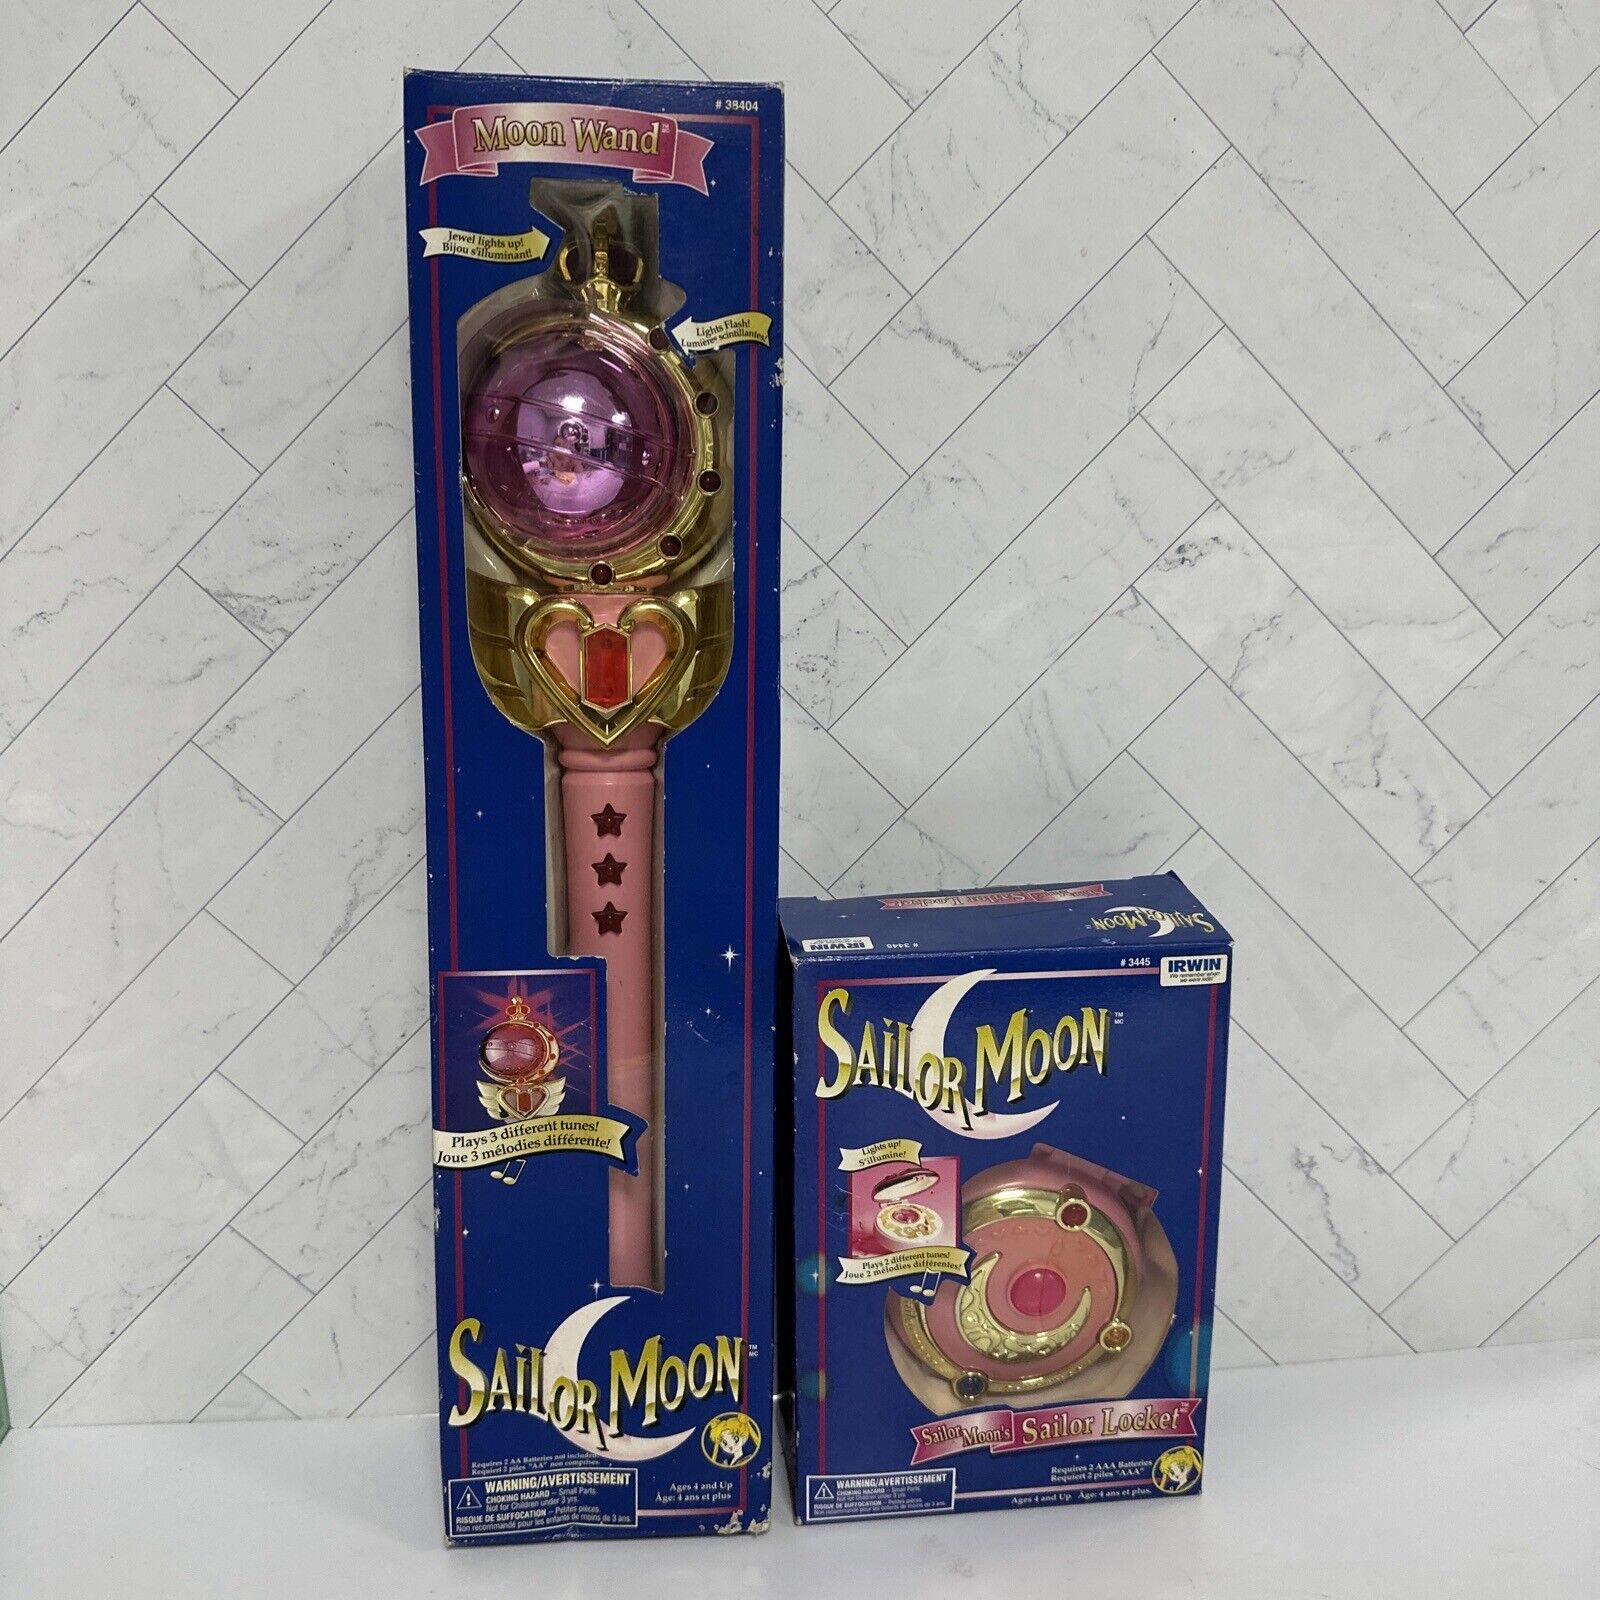 Sailor Moon 1997 Moon Want and Sailor Locket 1995 - Both IN box - SEE NOTES